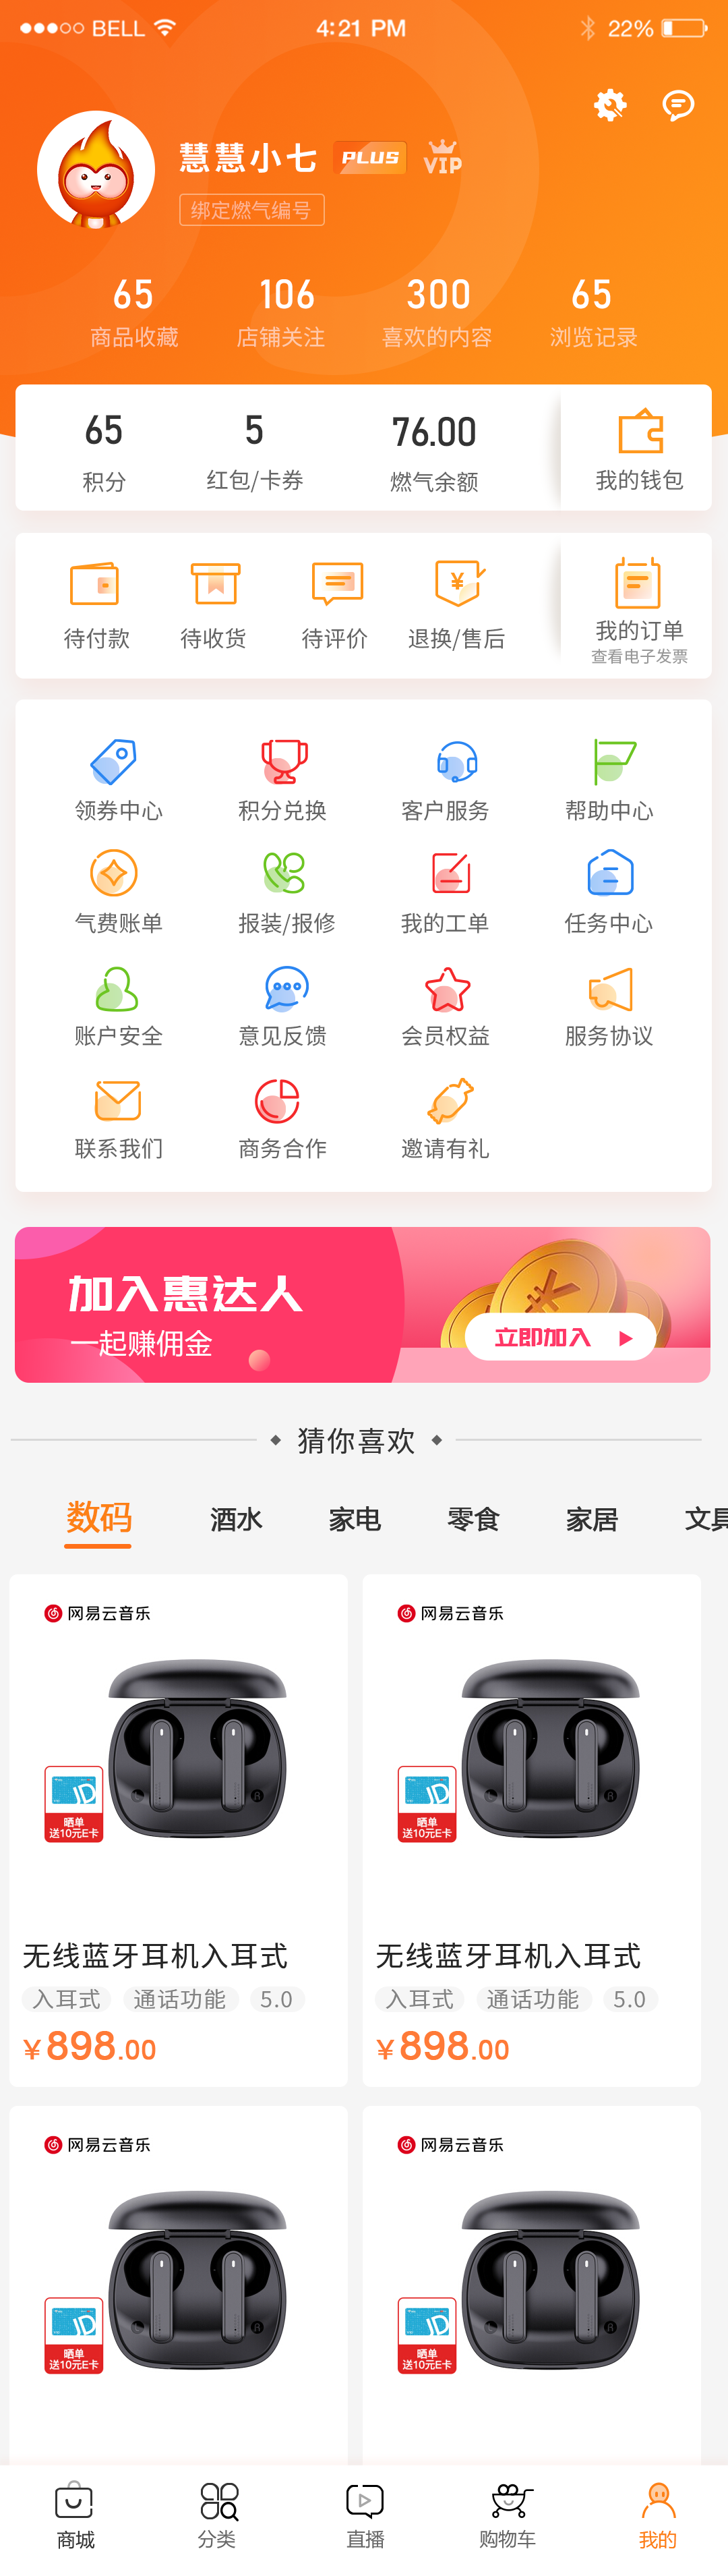 中国燃气-慧生活 UI设计(图4)